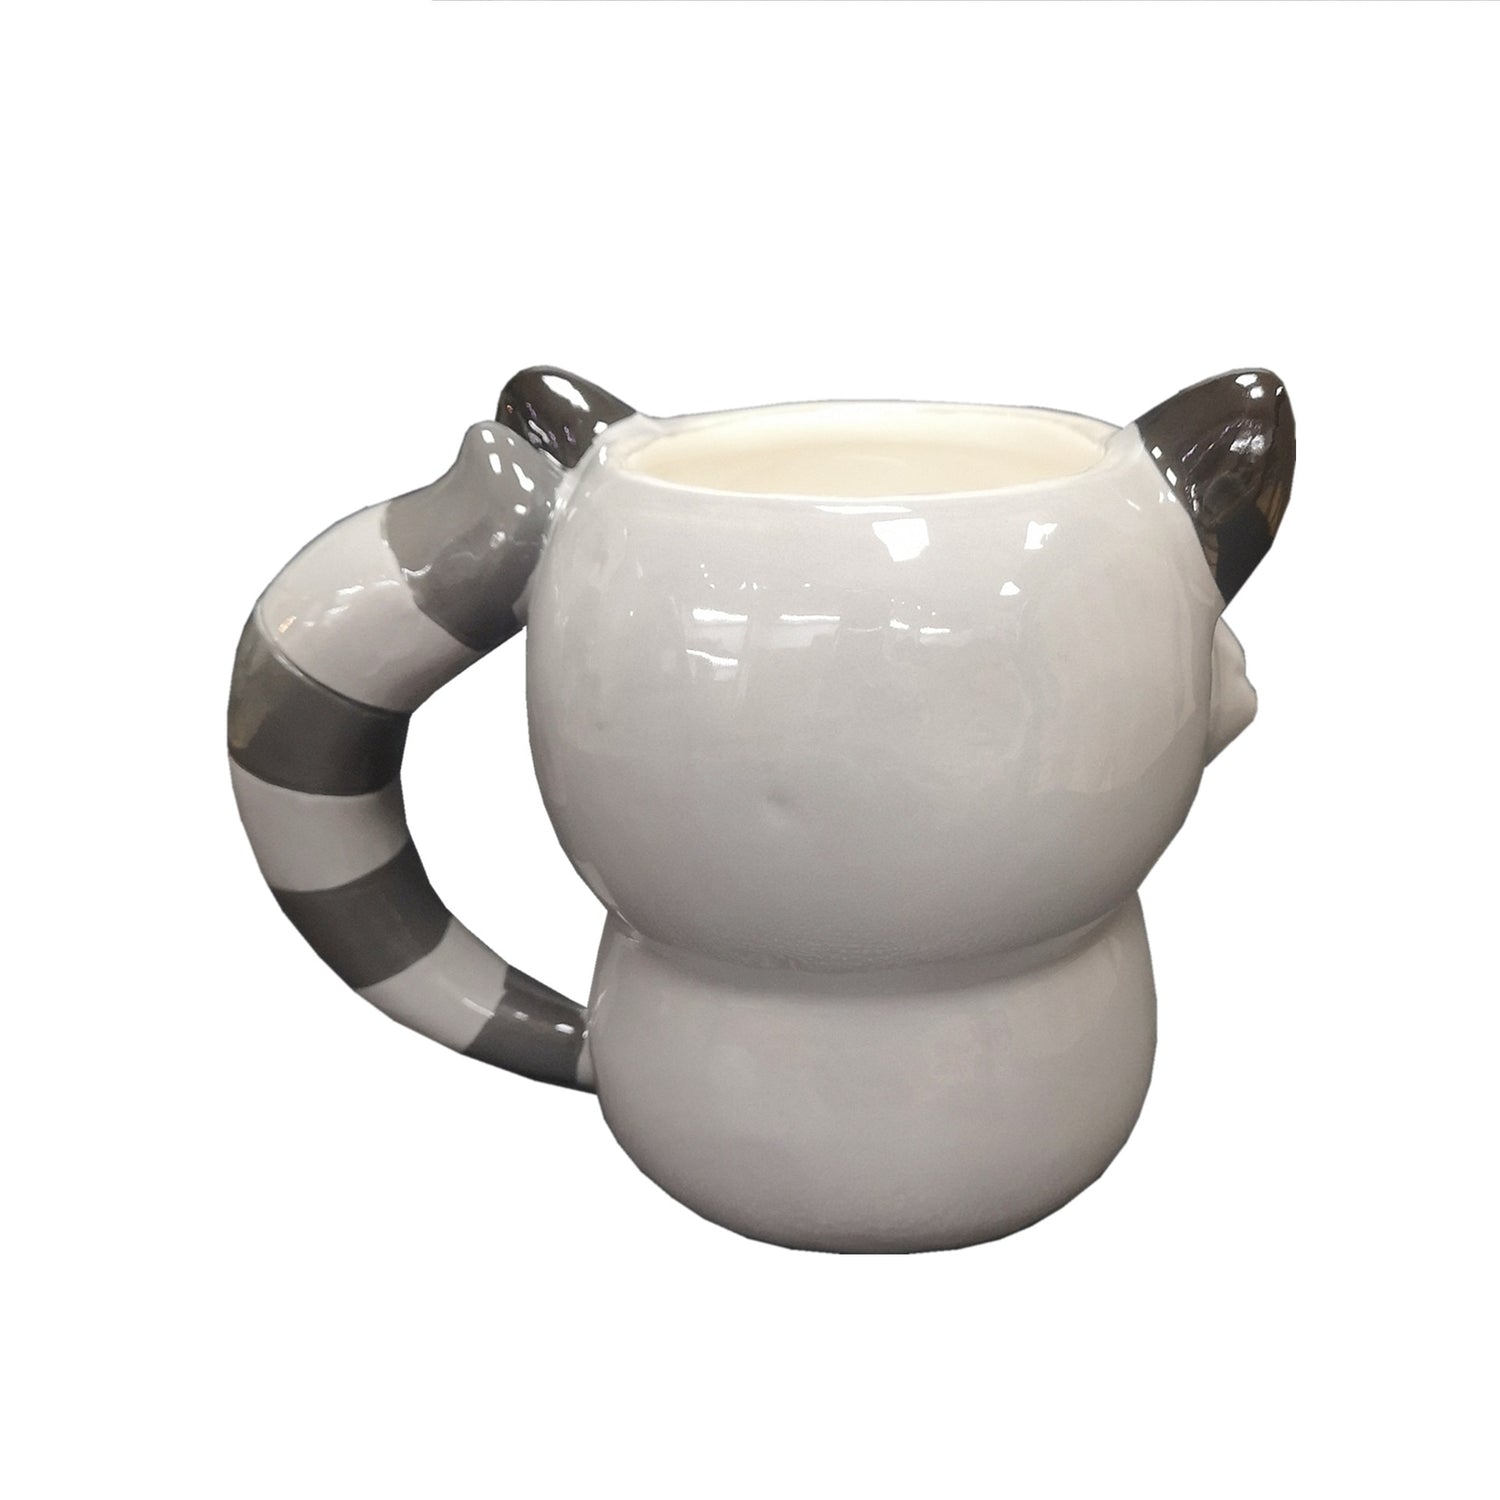 3D Raccoon Mug